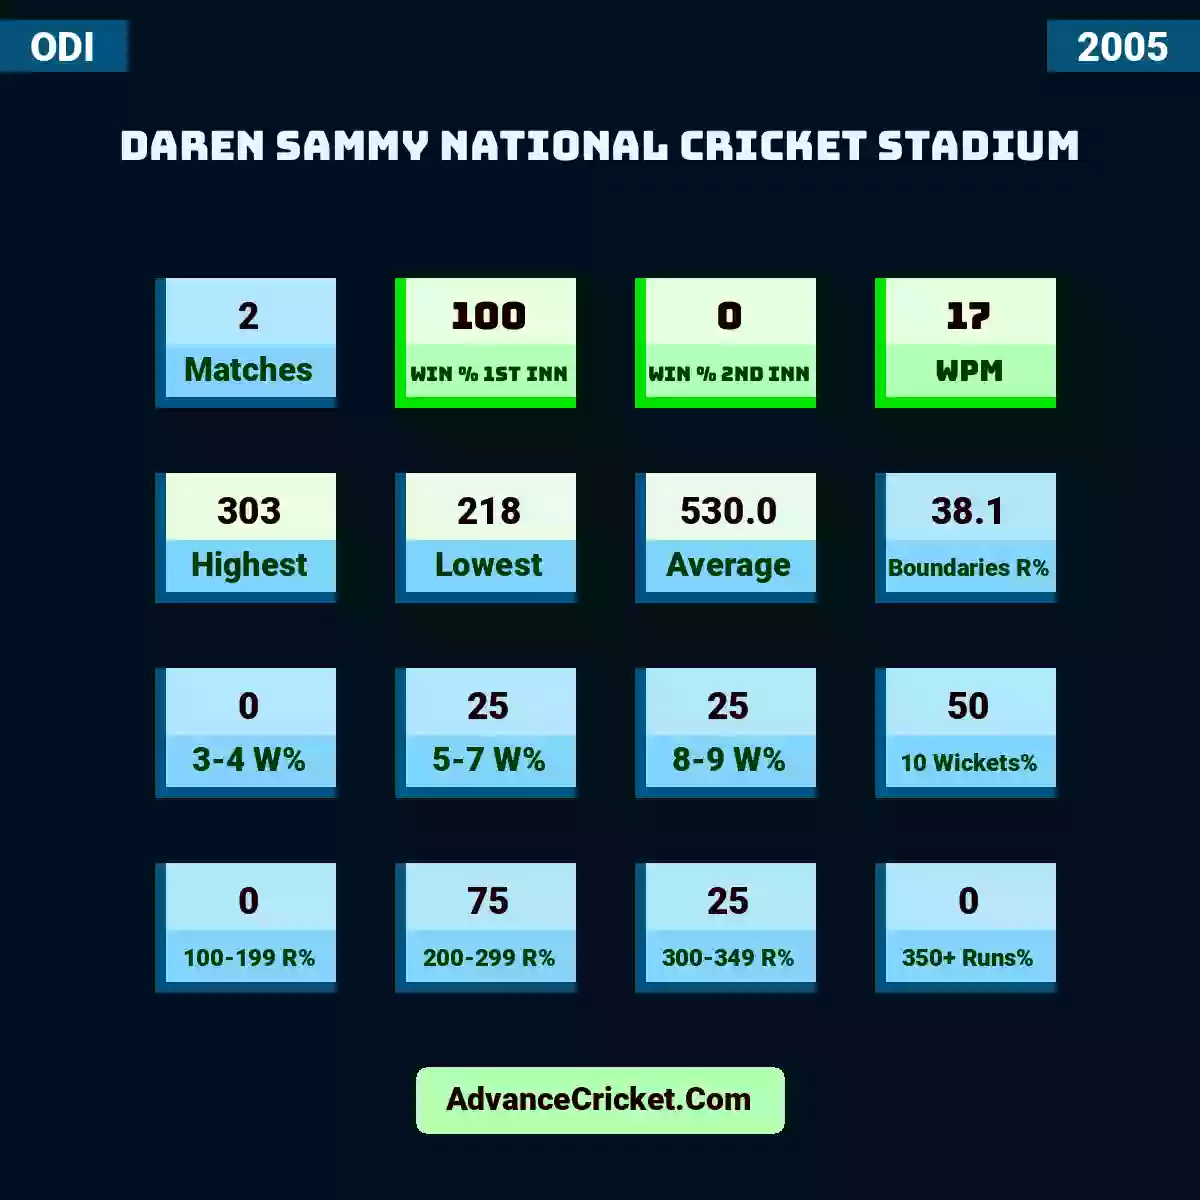 Image showing Daren Sammy National Cricket Stadium with Matches: 2, Win % 1st Inn: 100, Win % 2nd Inn: 0, WPM: 17, Highest: 303, Lowest: 218, Average: 530.0, Boundaries R%: 38.1, 3-4 W%: 0, 5-7 W%: 25, 8-9 W%: 25, 10 Wickets%: 50, 100-199 R%: 0, 200-299 R%: 75, 300-349 R%: 25, 350+ Runs%: 0.